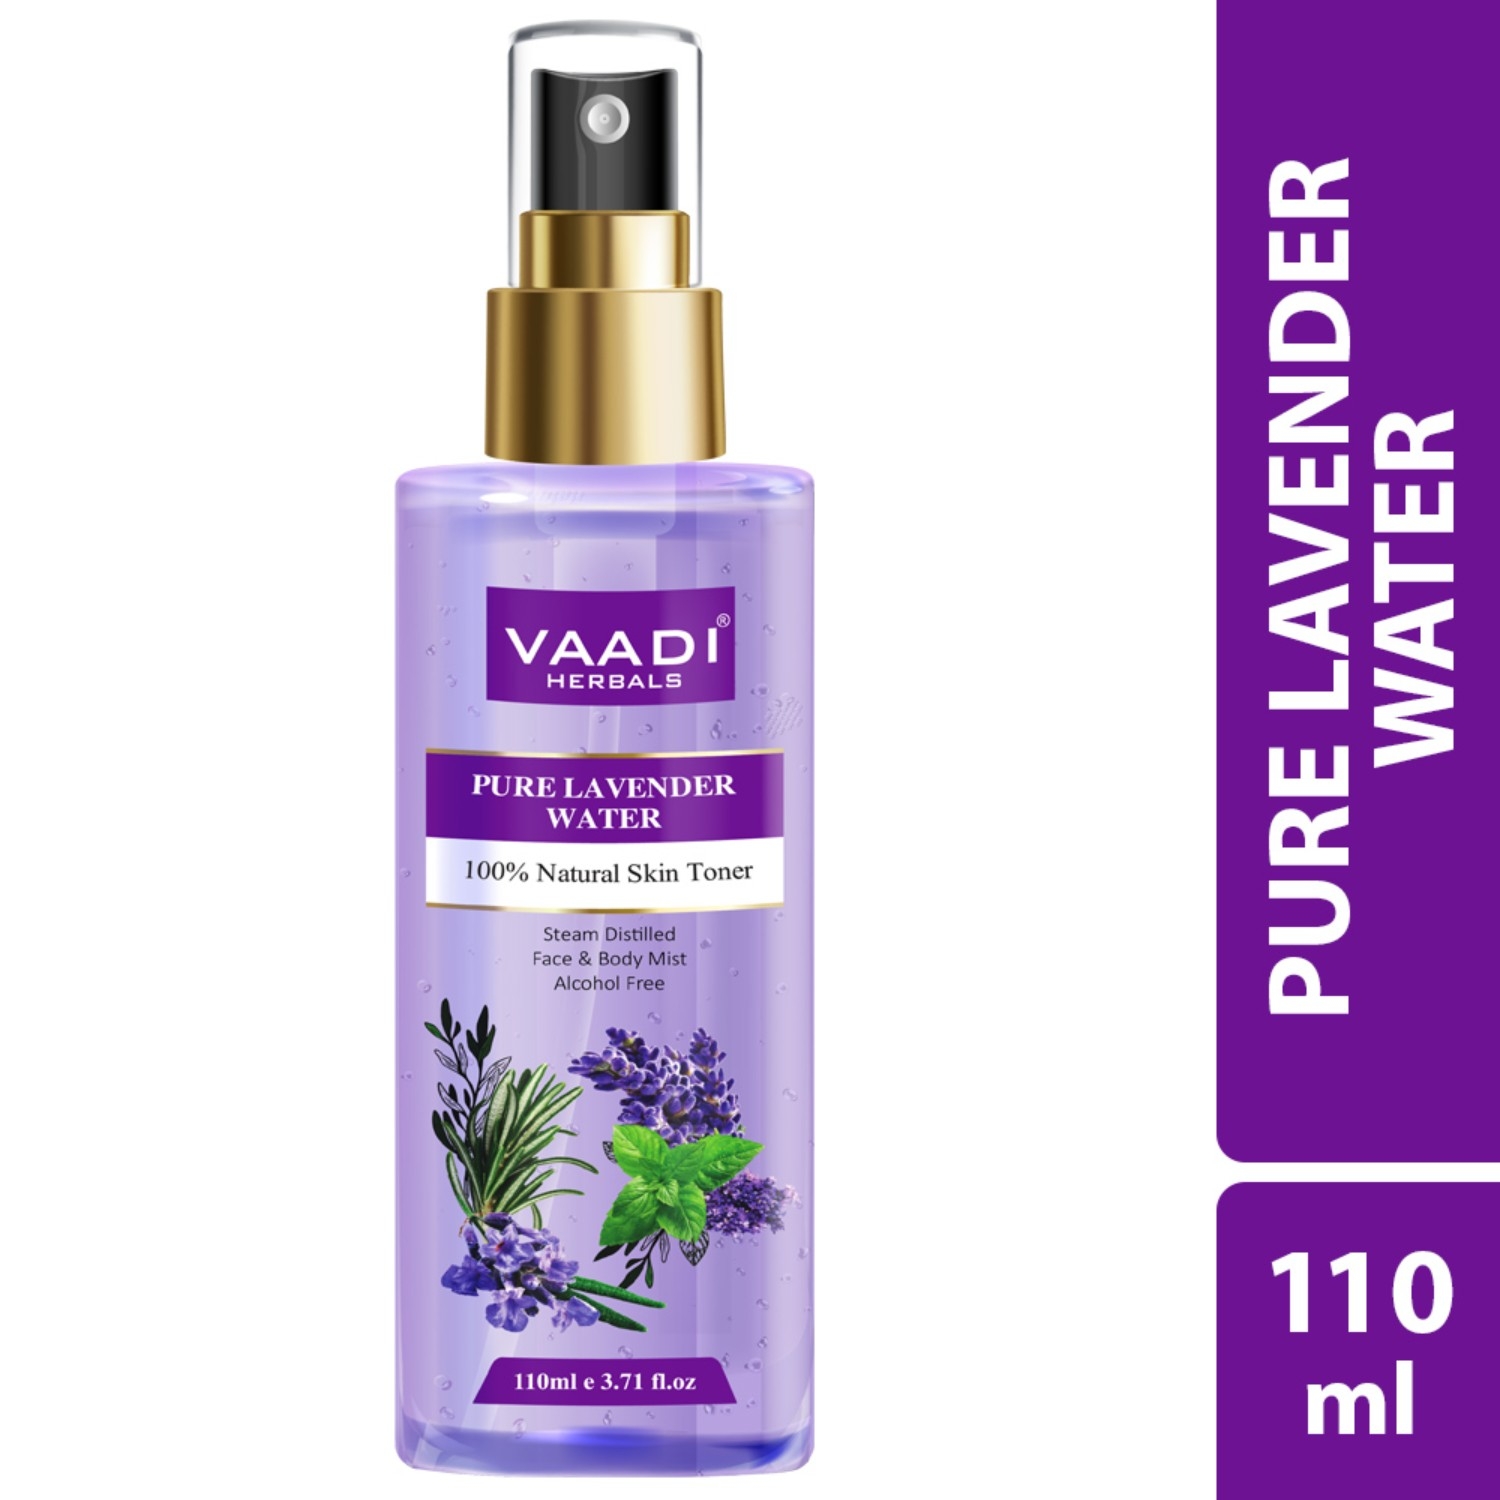 Vaadi Herbals | Vaadi Herbals Lavender Water 100% Natural and Pure Skin Toner (110ml)